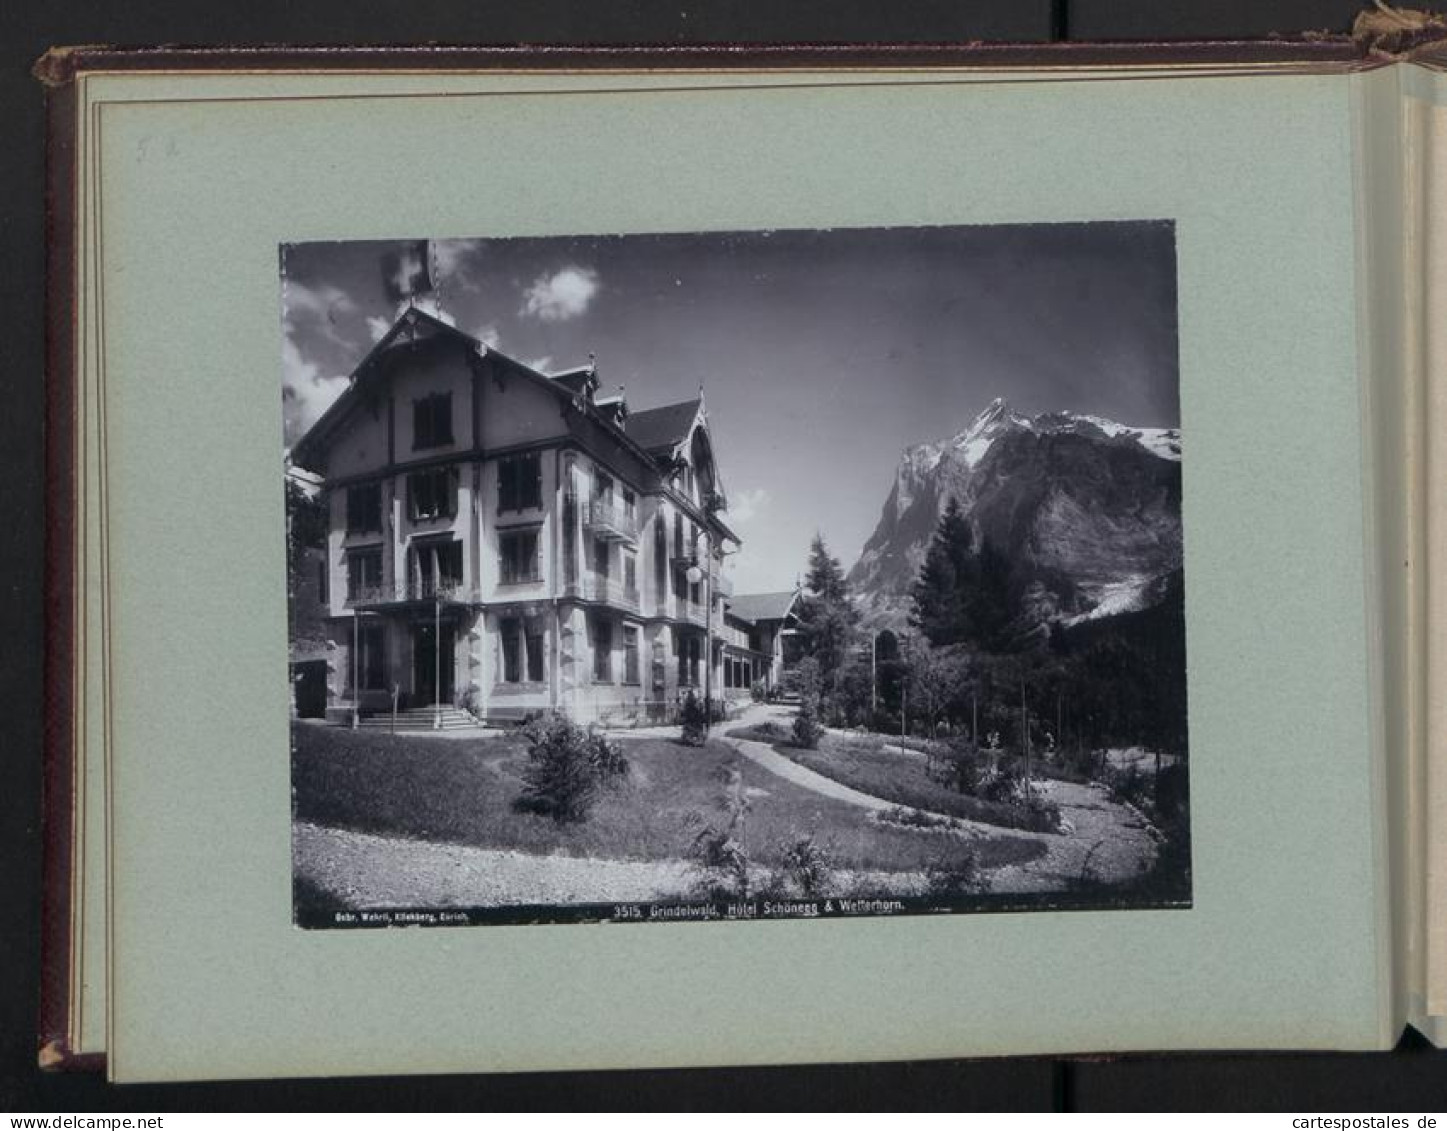 Fotoalbum mit 38 Fotografien, Ansicht Rapallo, Südtirol, Gletscher, Panorama vom Kleinboden, Gardasee 